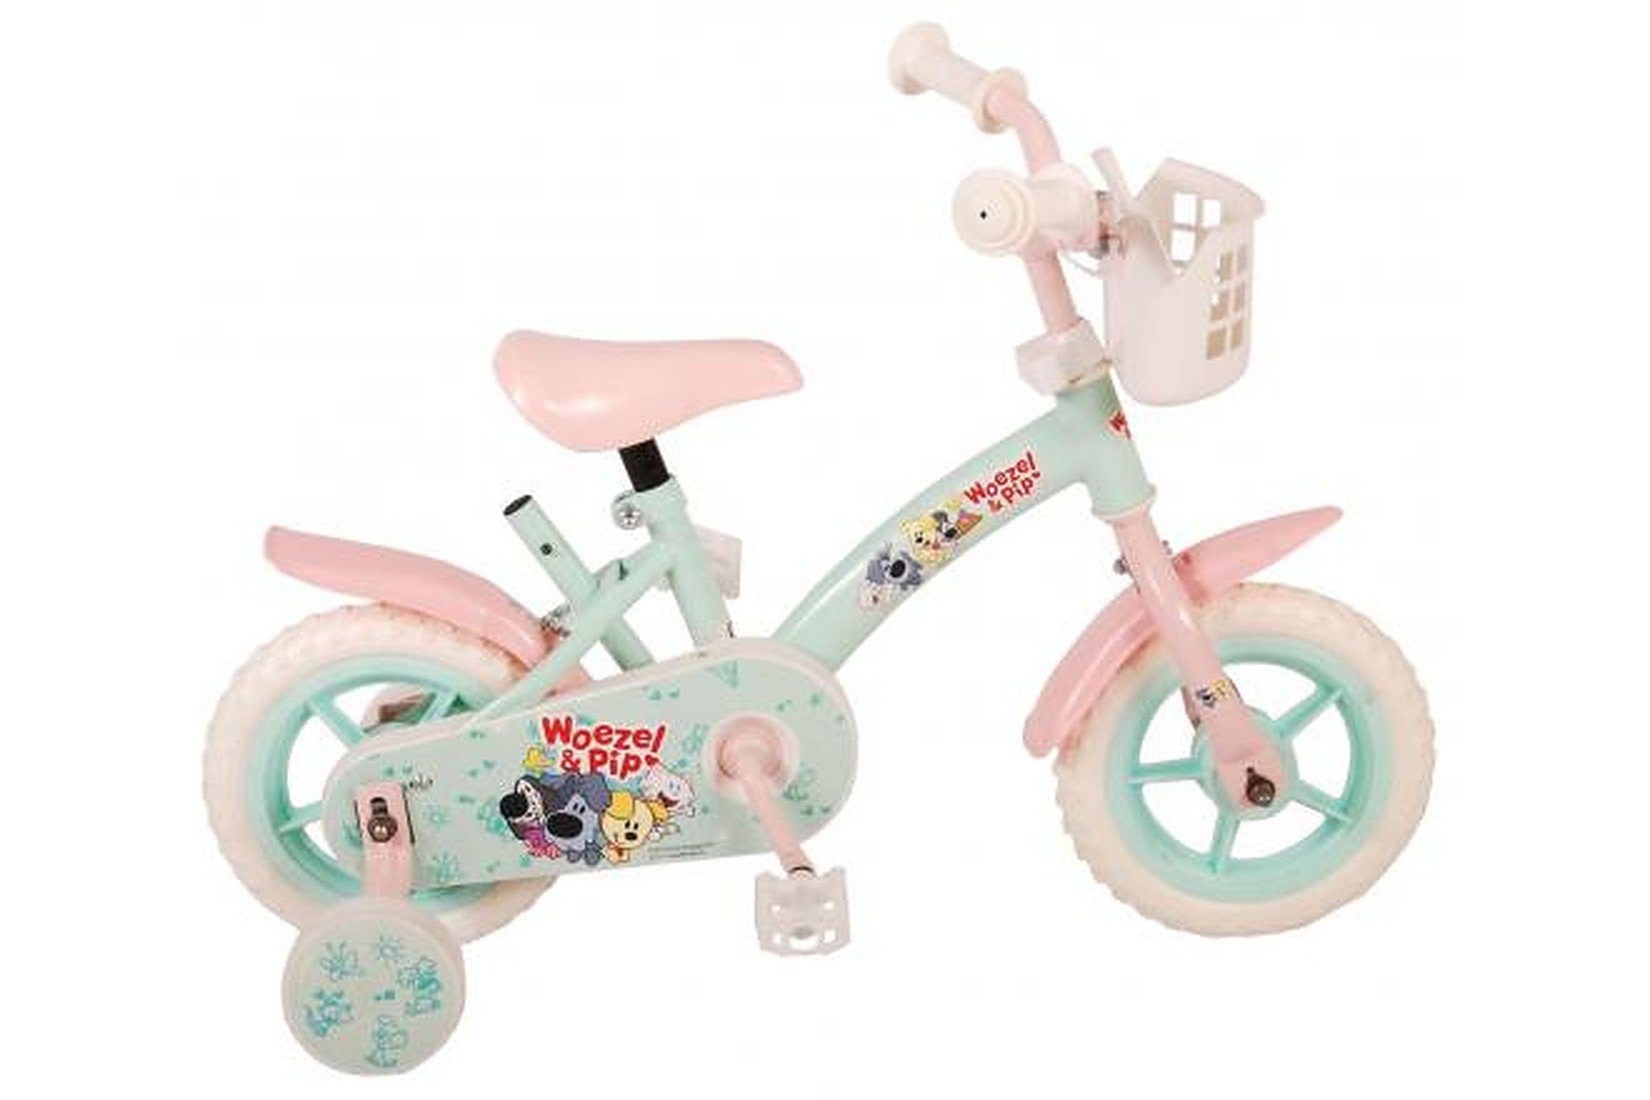 Volare Kinderfahrrad Woezel & Pip Mädchen - 10 Zoll - Mint Blue/Pink - Alter: 2 - 4 Jahre, bis 60 kg, EVA Reifen mit Weichprofil, einstellbare Lenkerhöhe | Kinderfahrräder